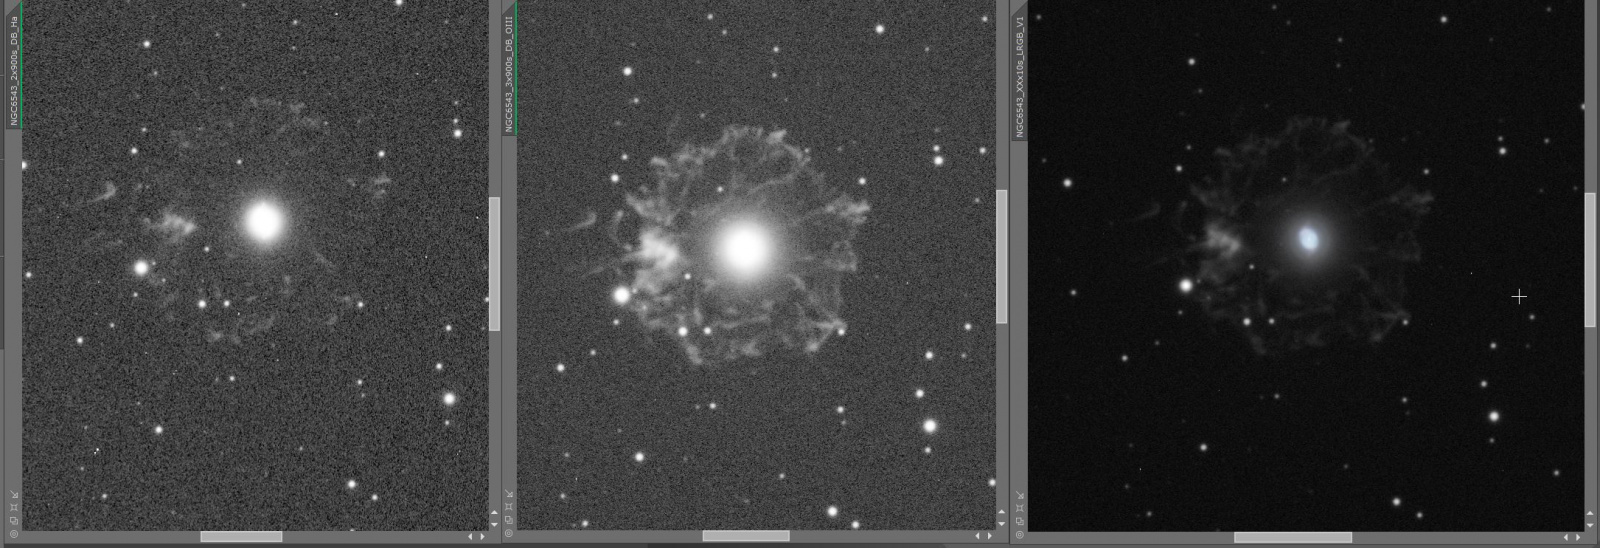 NGC6543.thumb.JPG.e7d6c562d6c42e57e8eeba99c38fb781.JPG